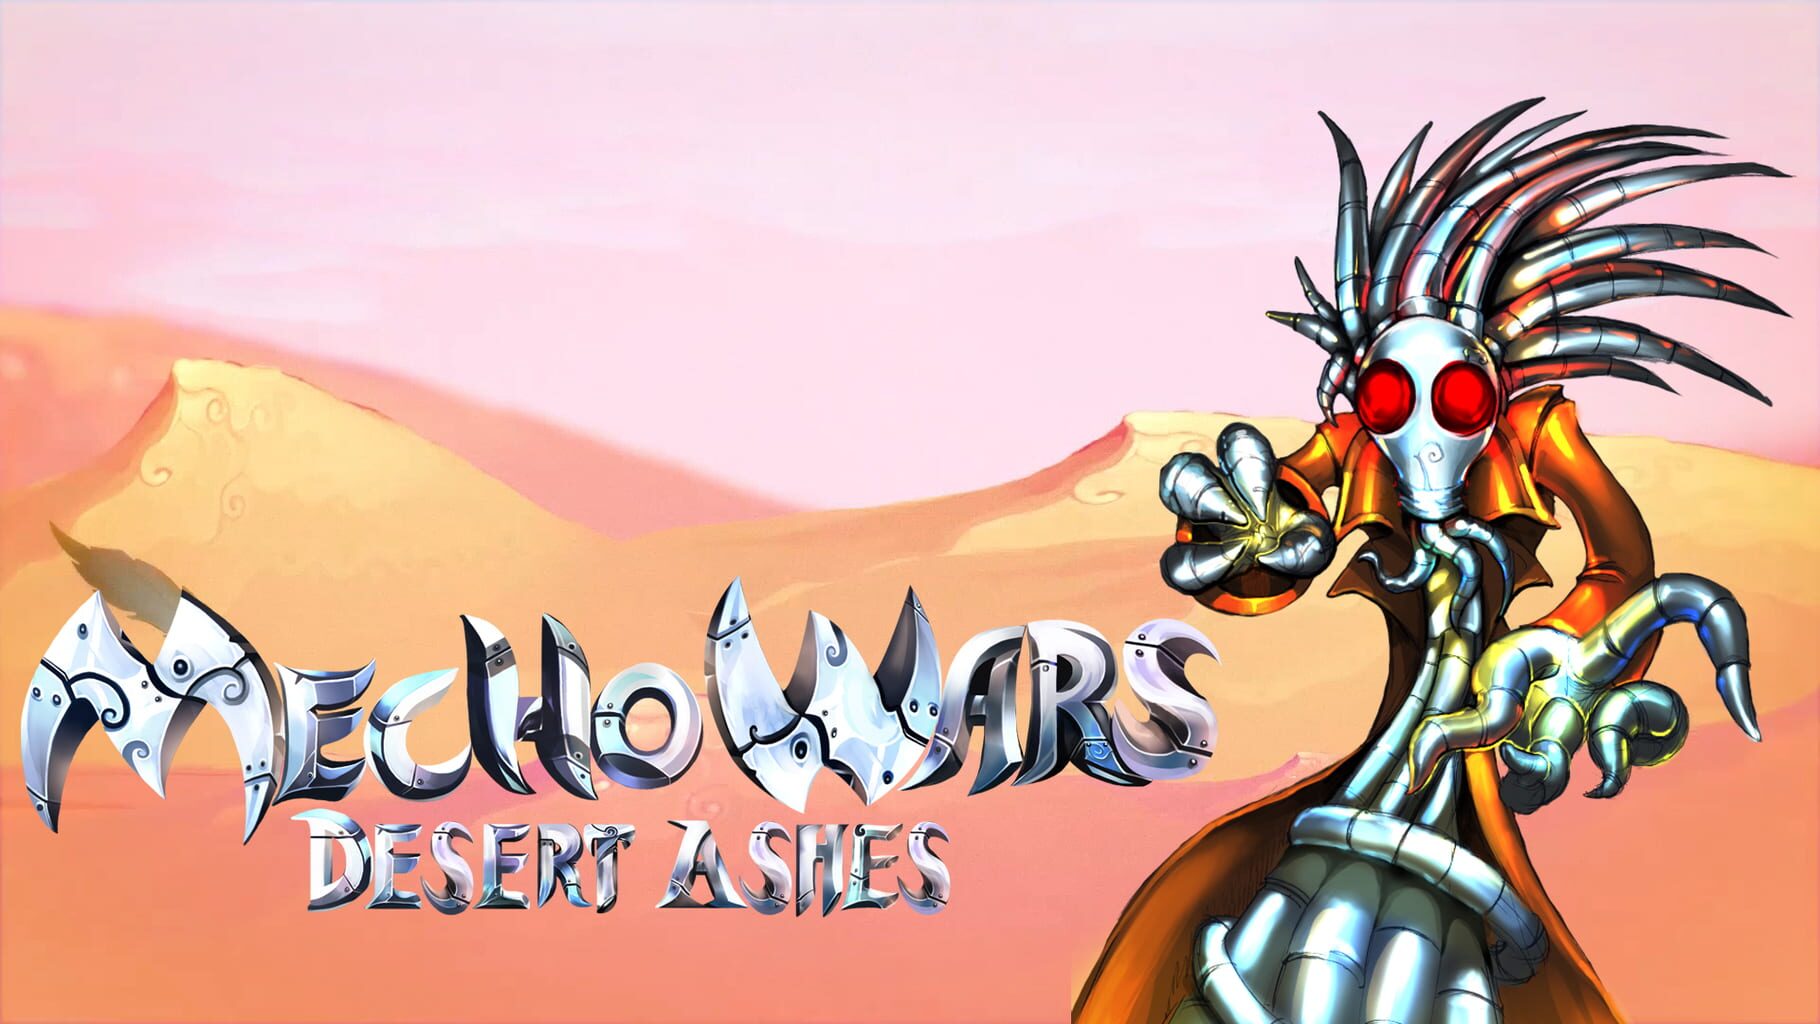 Mecho Wars: Desert Ashes artwork